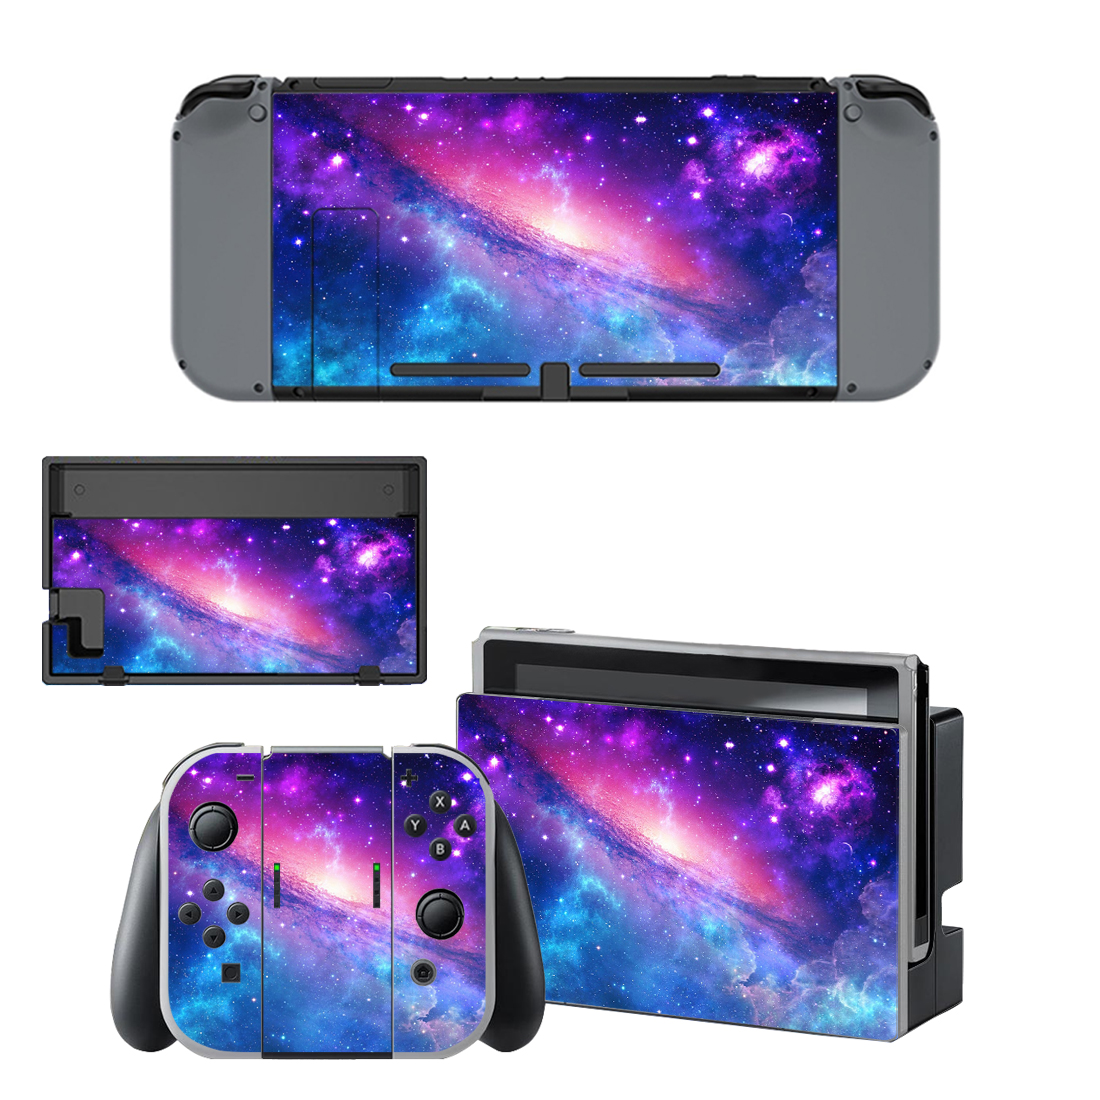 Milky Way Galaxy Nintendo Switch Skin Sticker Decal